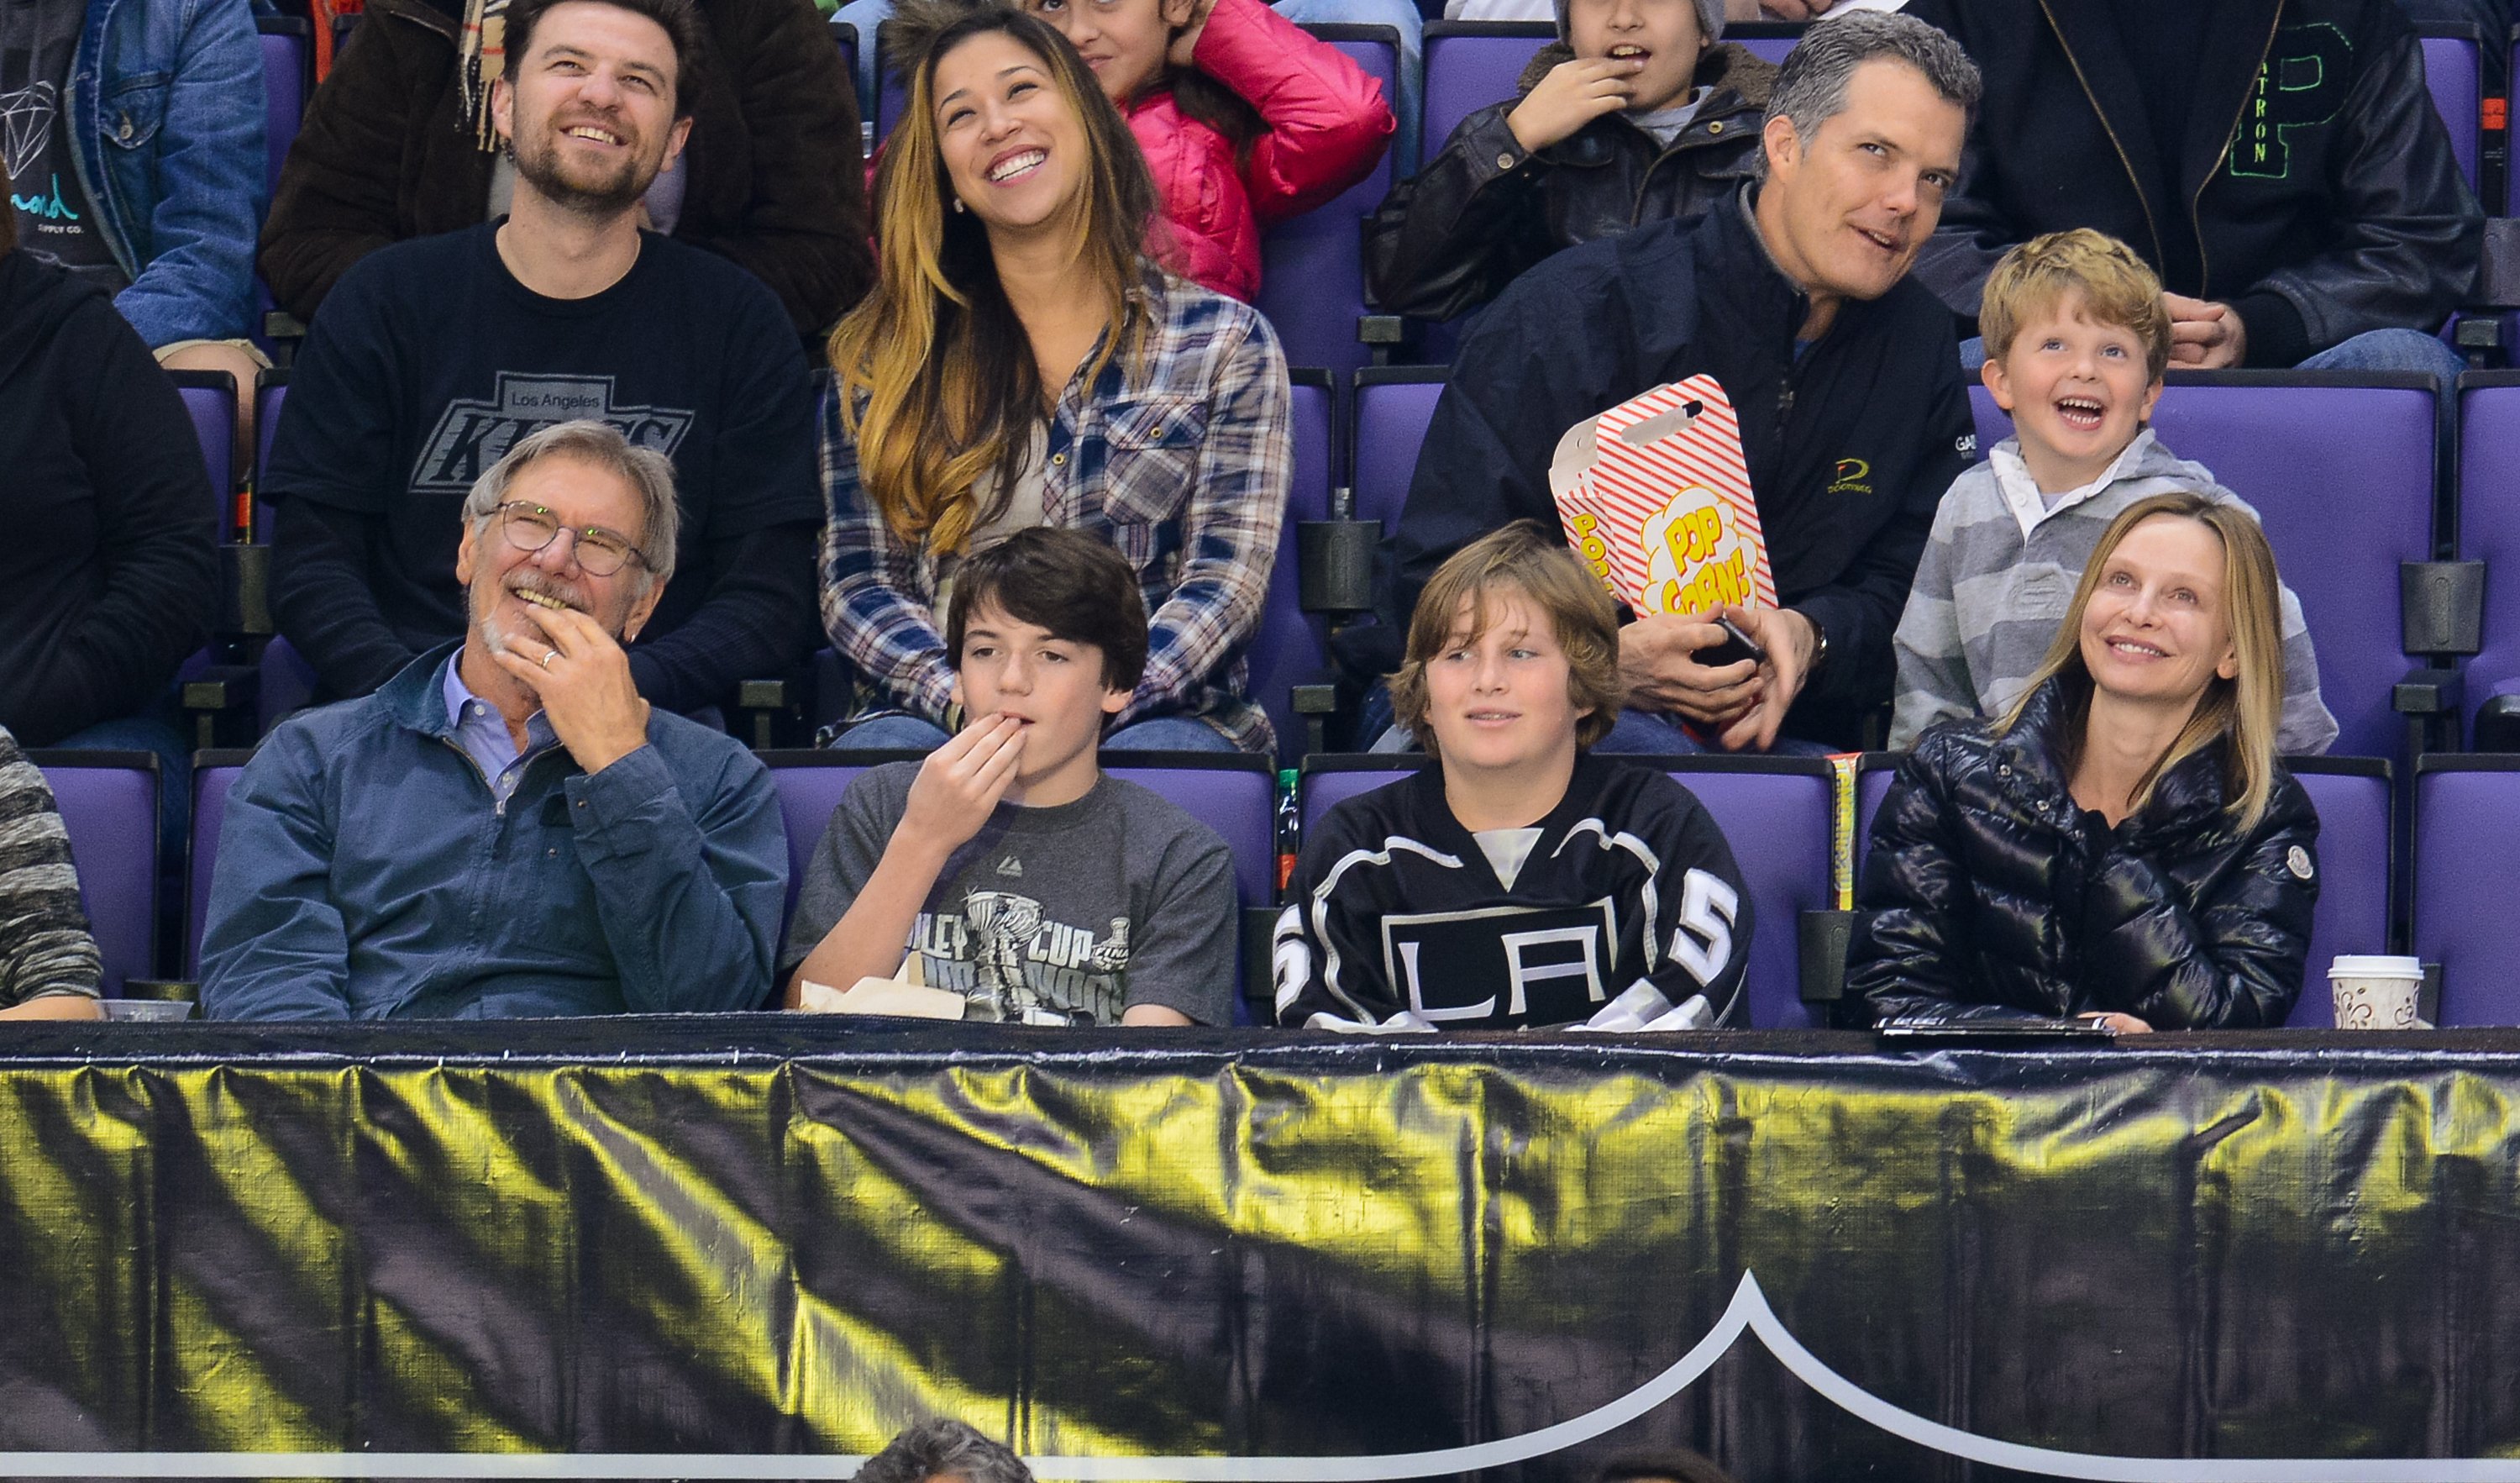 Harrison Ford, Liam Flockhart, un invité, et Calista Flockhart lors d'un match de hockey au Staples Center le 1er mars 2014, à Los Angeles, Californie | Source : Getty Images